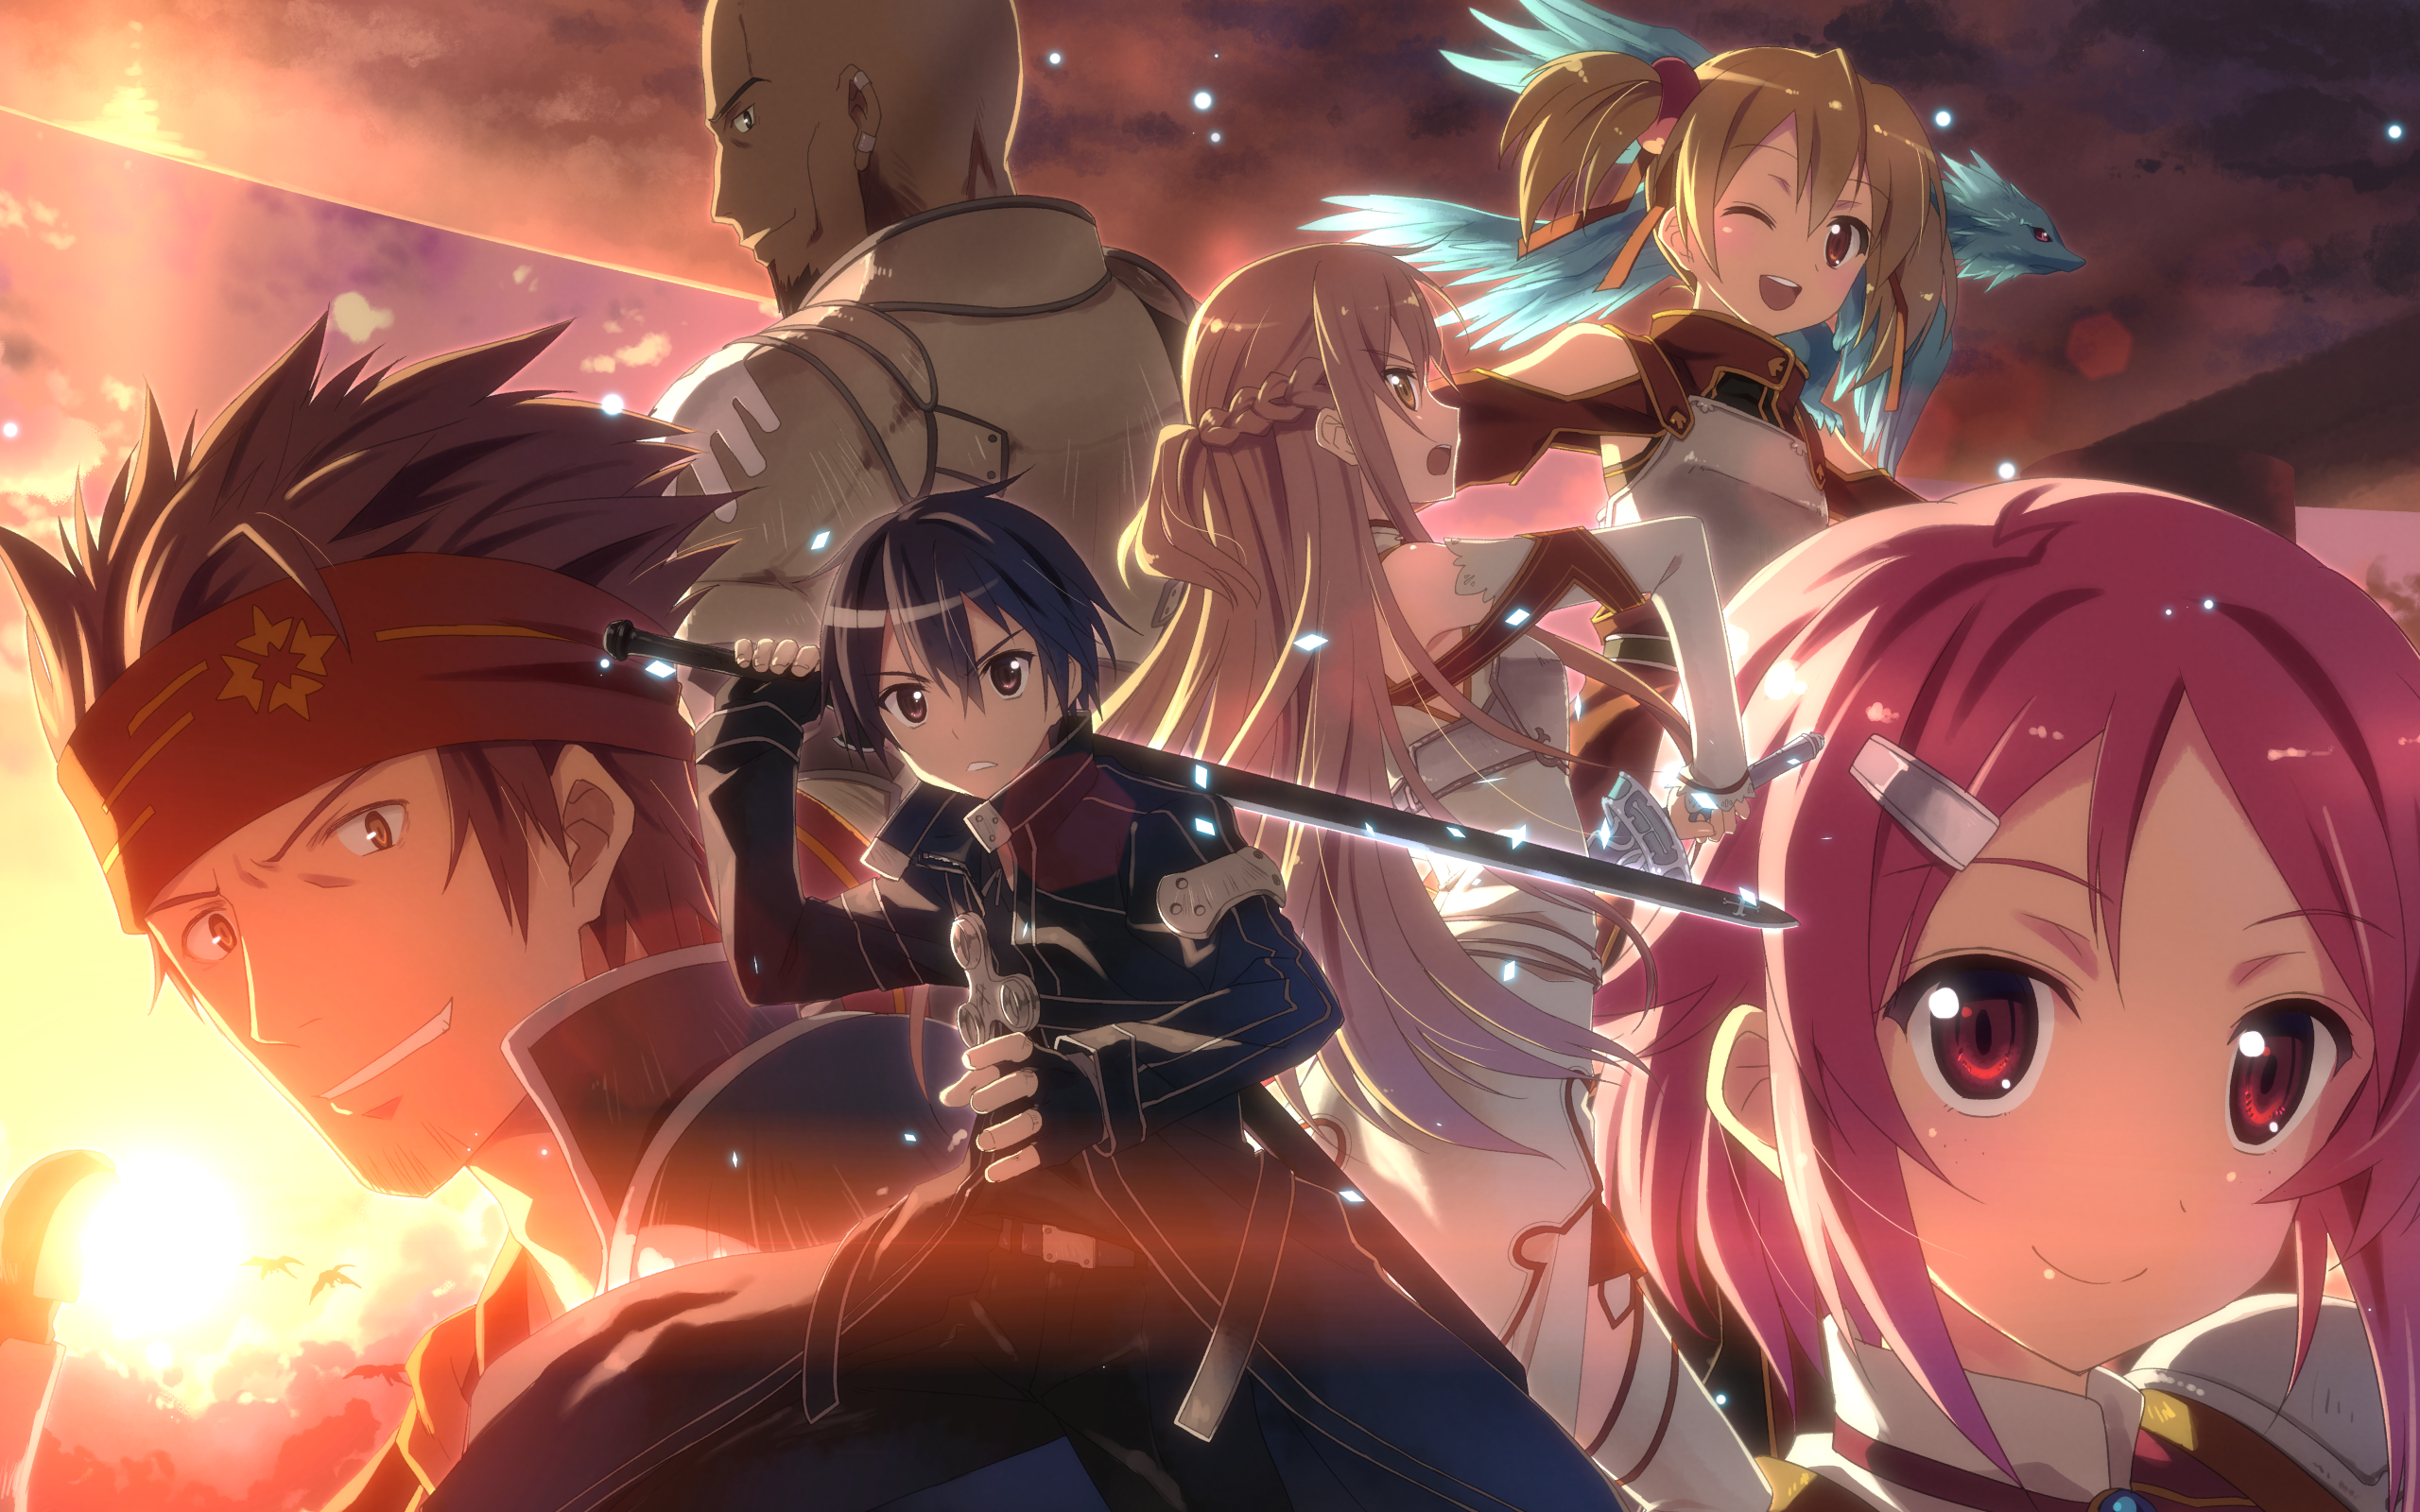 Anime Sword Art Online Wallpaper